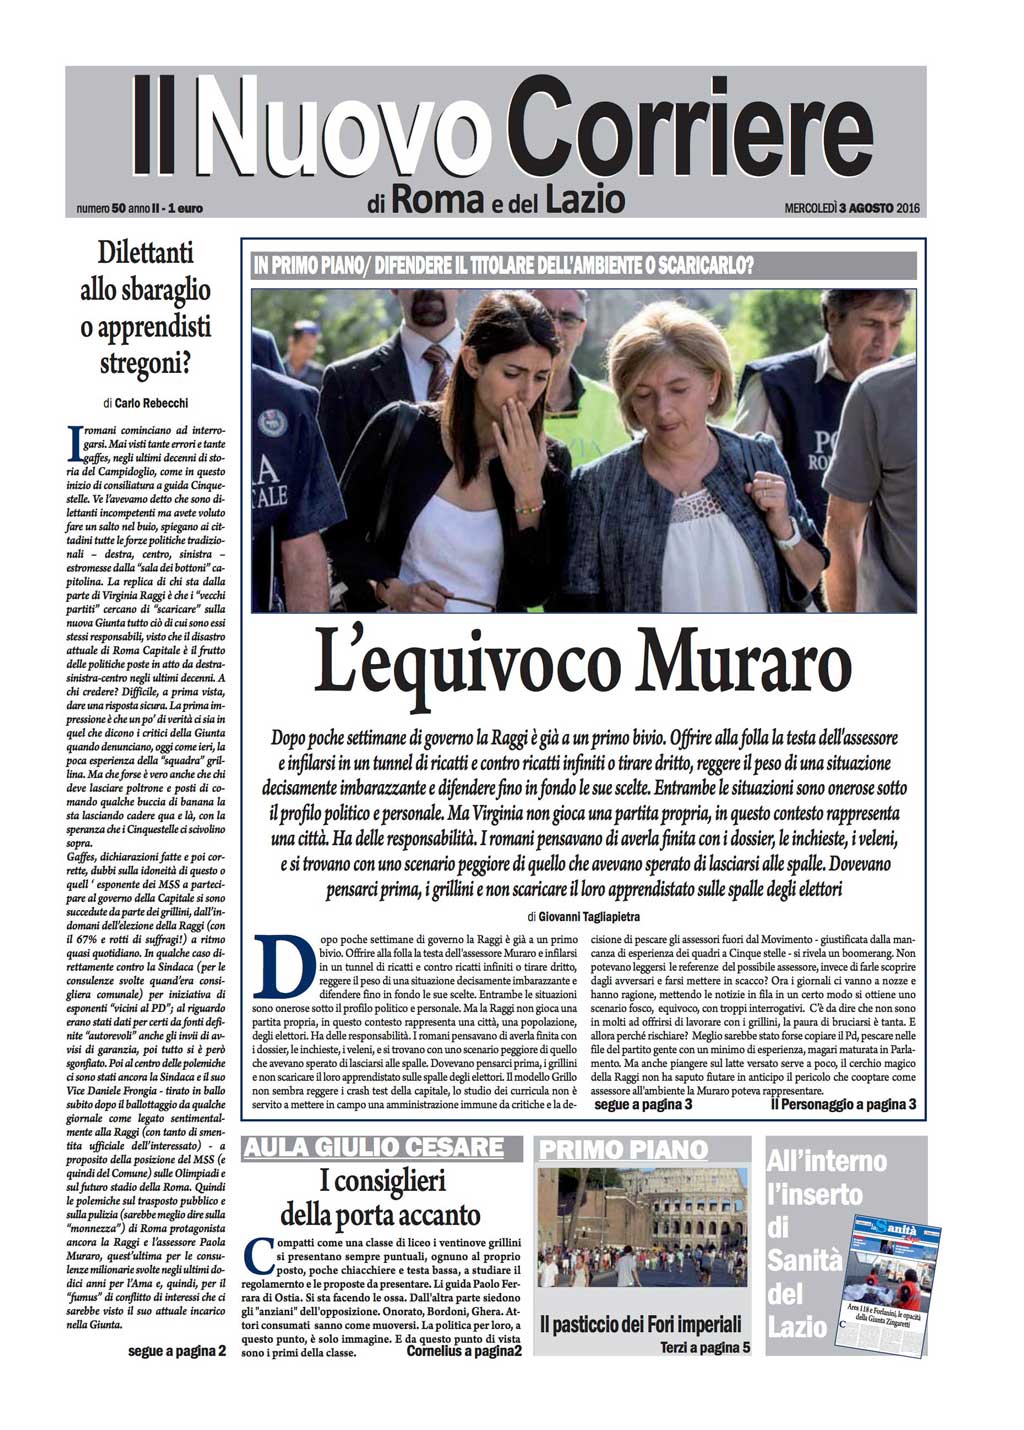 Il Nuovo Corriere di Roma – Mercoledì 3 Agosto 2016